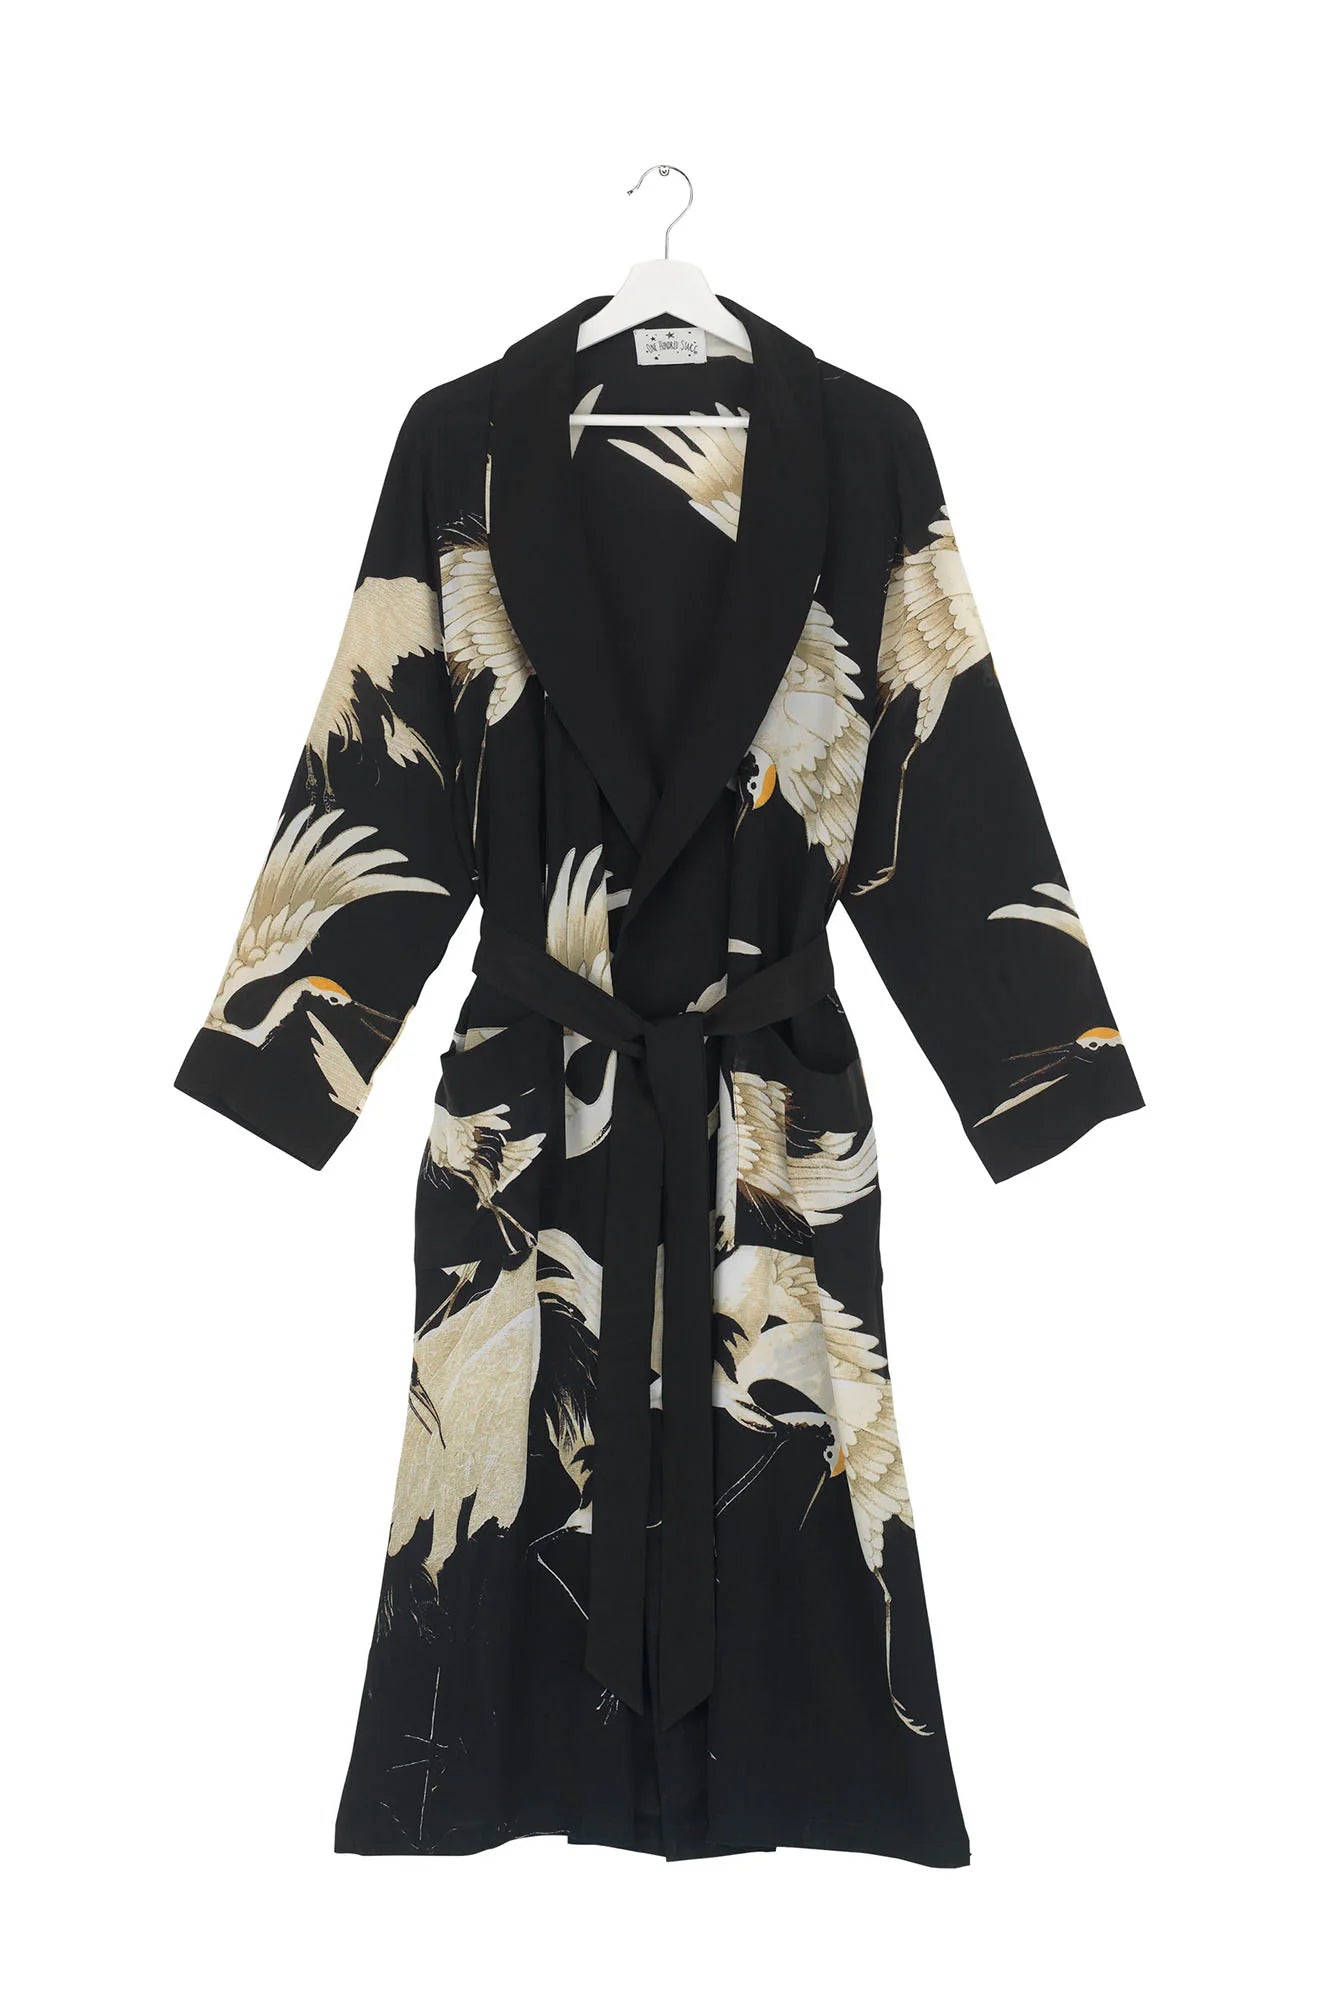 Kimono Stork Black Crepe Gown - One Hundred Stars